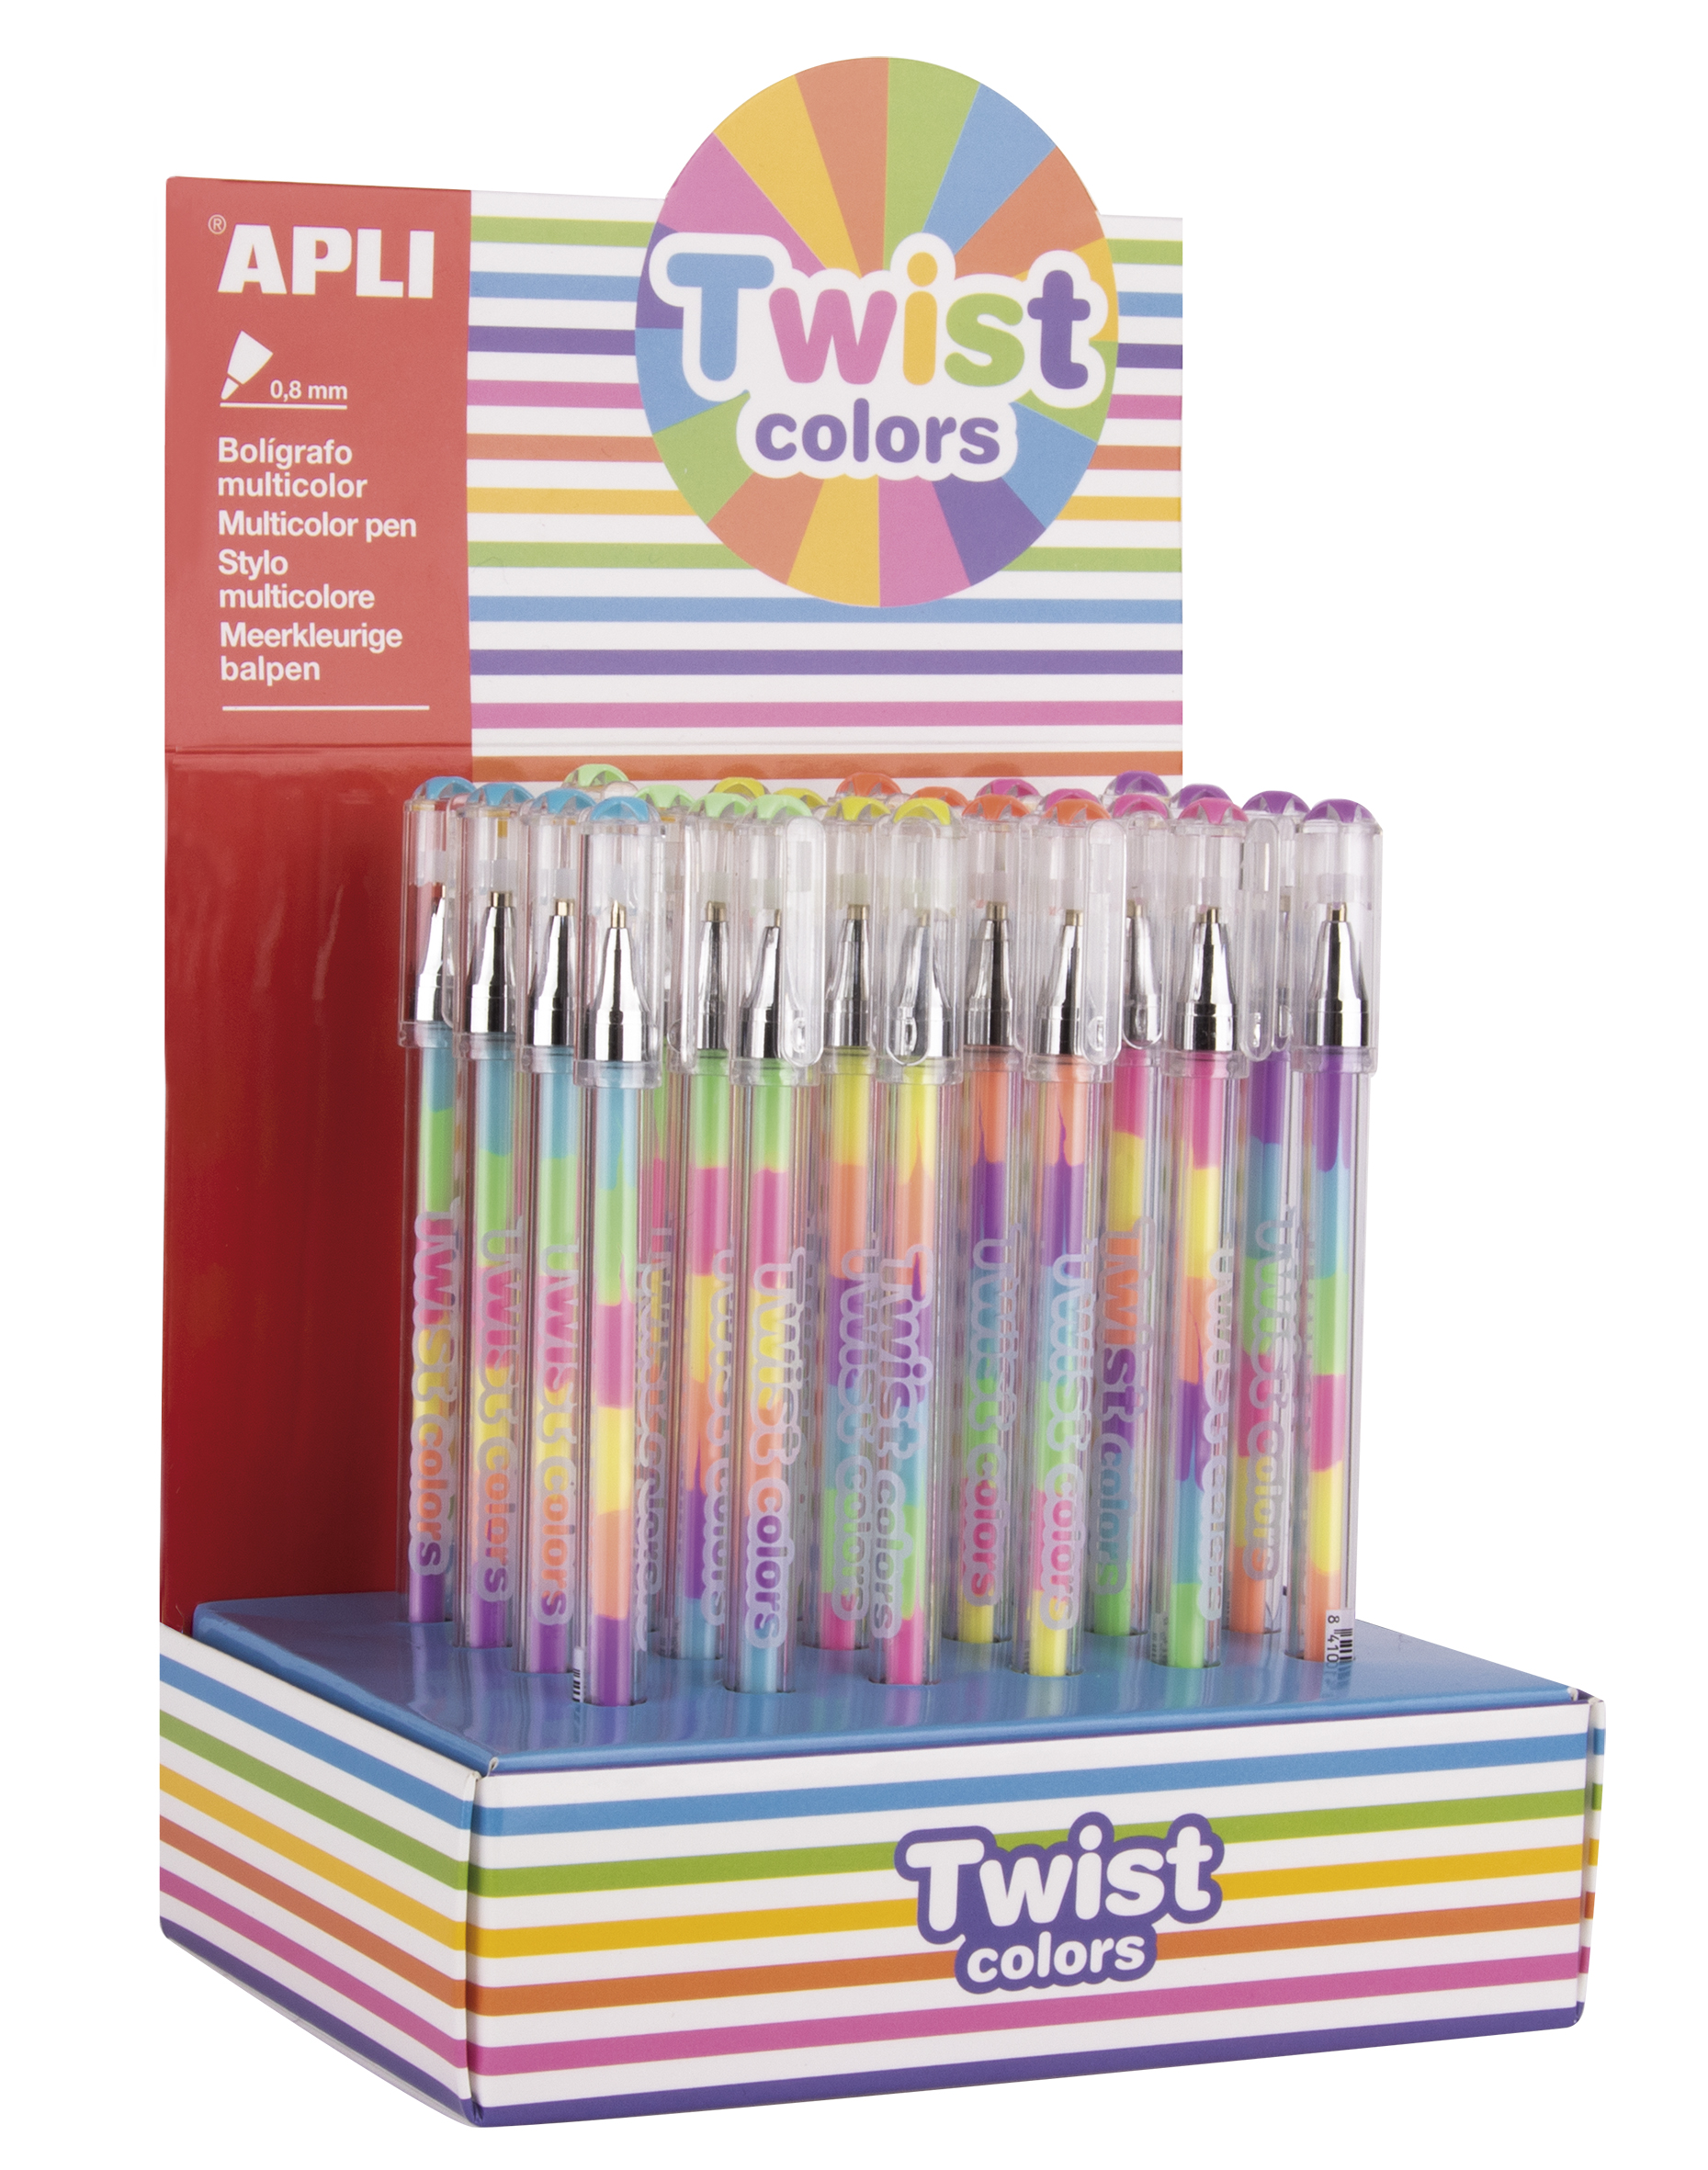 Apli Expositor Boligrafos Gel Pen Twist Colors - 0.8mm - Tinta Que Cambia de Color - Acabado Fluor - 24 Unidades - Secado Rapido y Larga Duracion